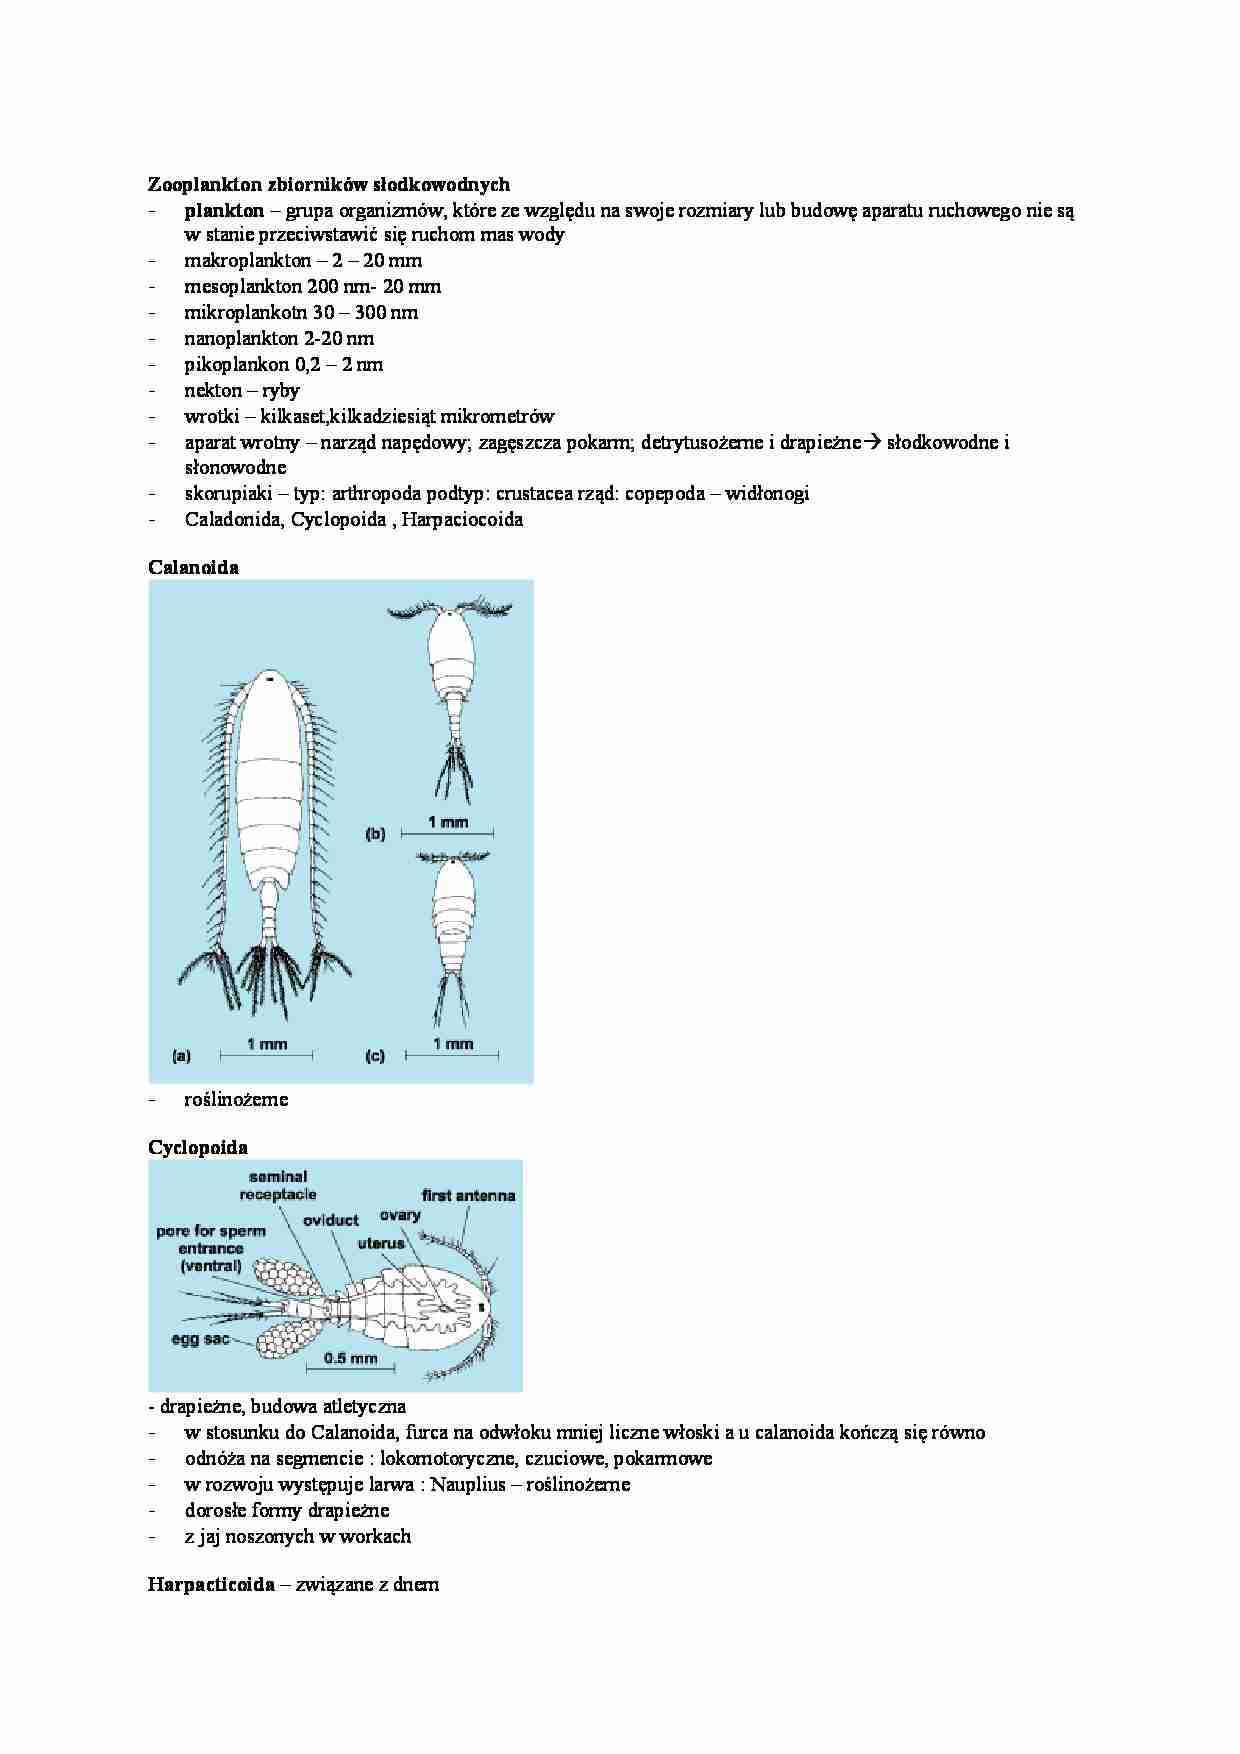 Zooplankton zbiorników środkowo wodnych - strona 1